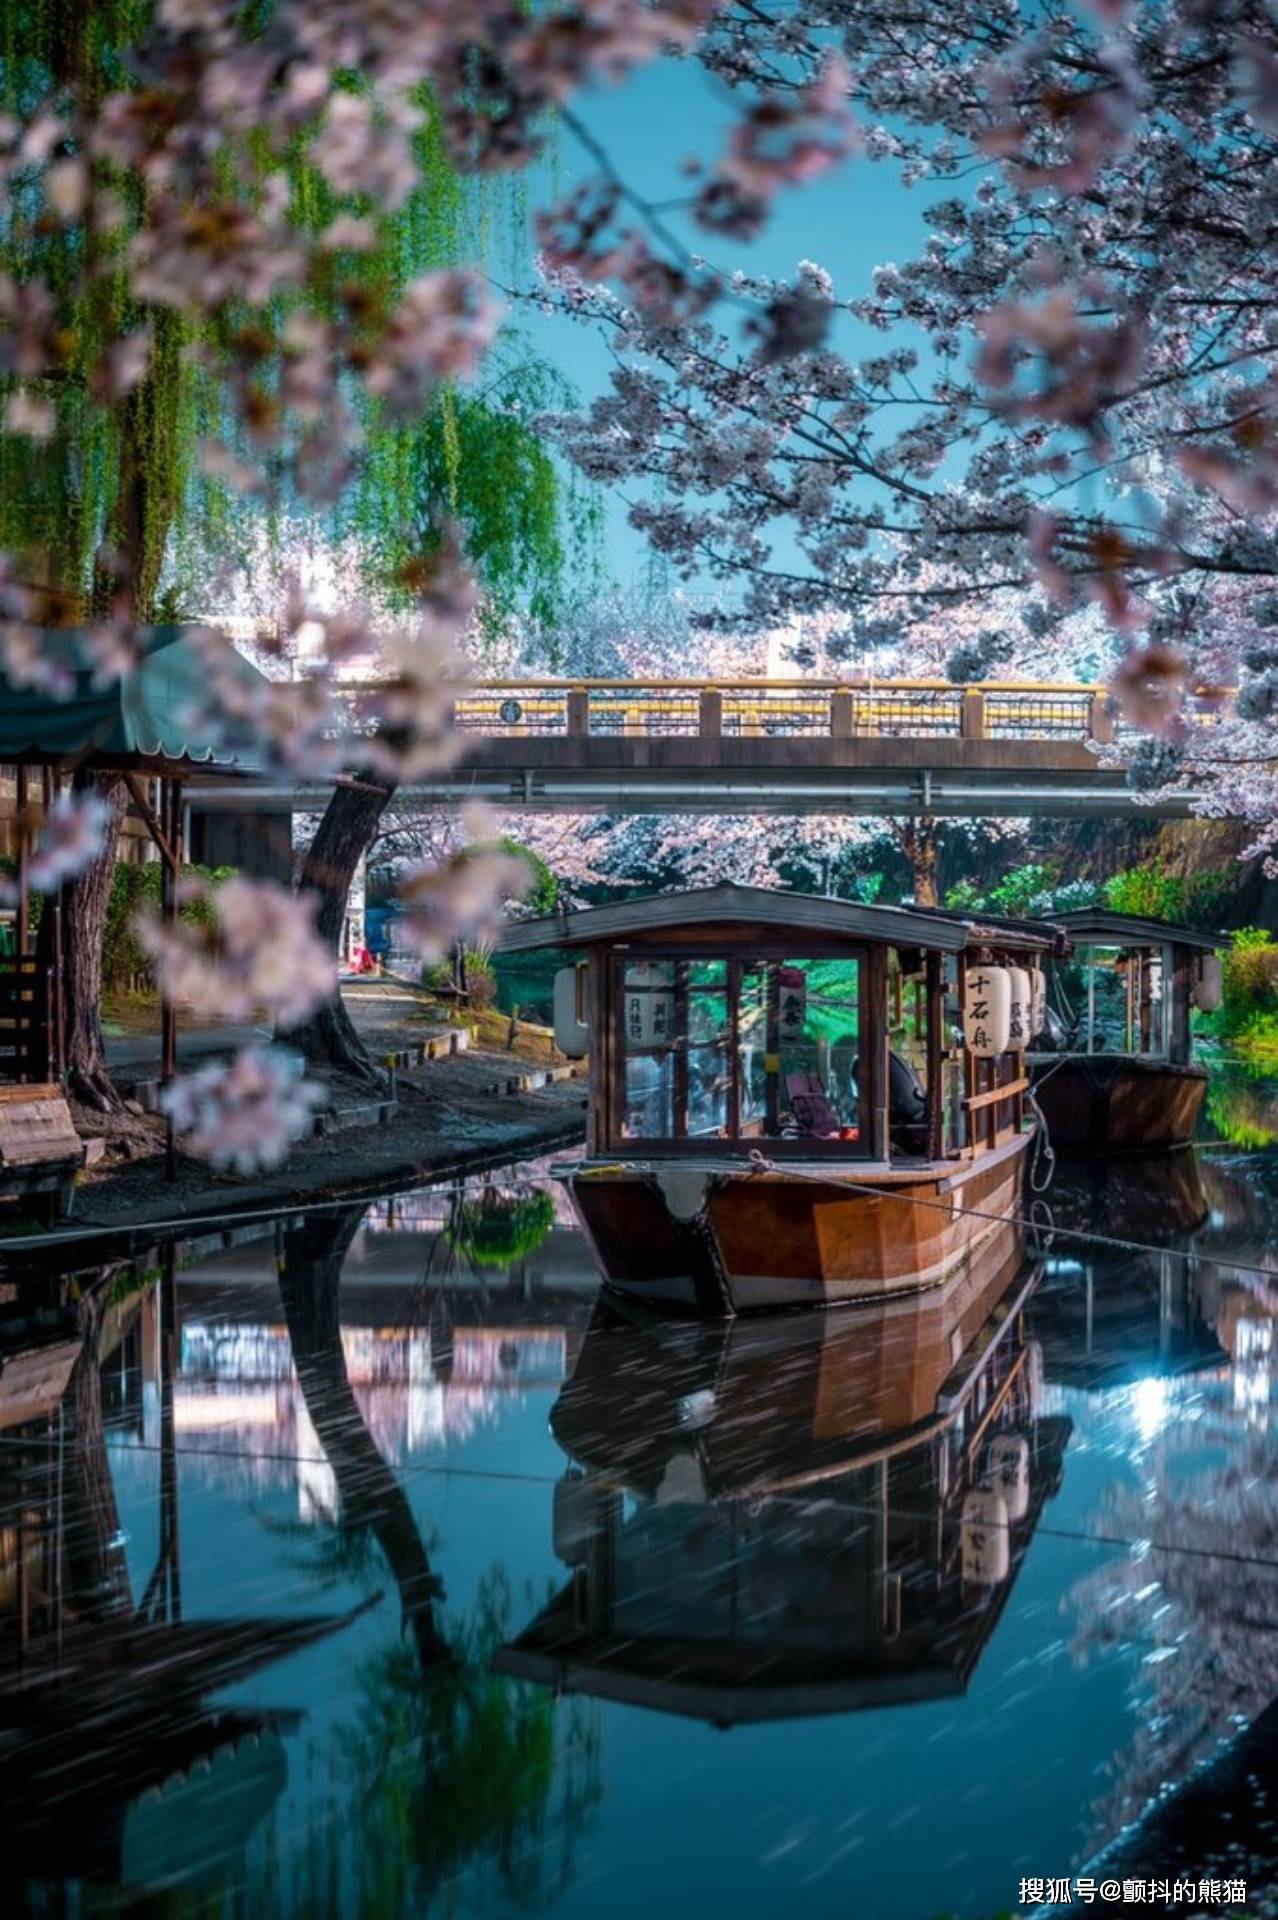 水色之夜！京都伏见十石舟的夜景照片简直就像游戏CG里的场景